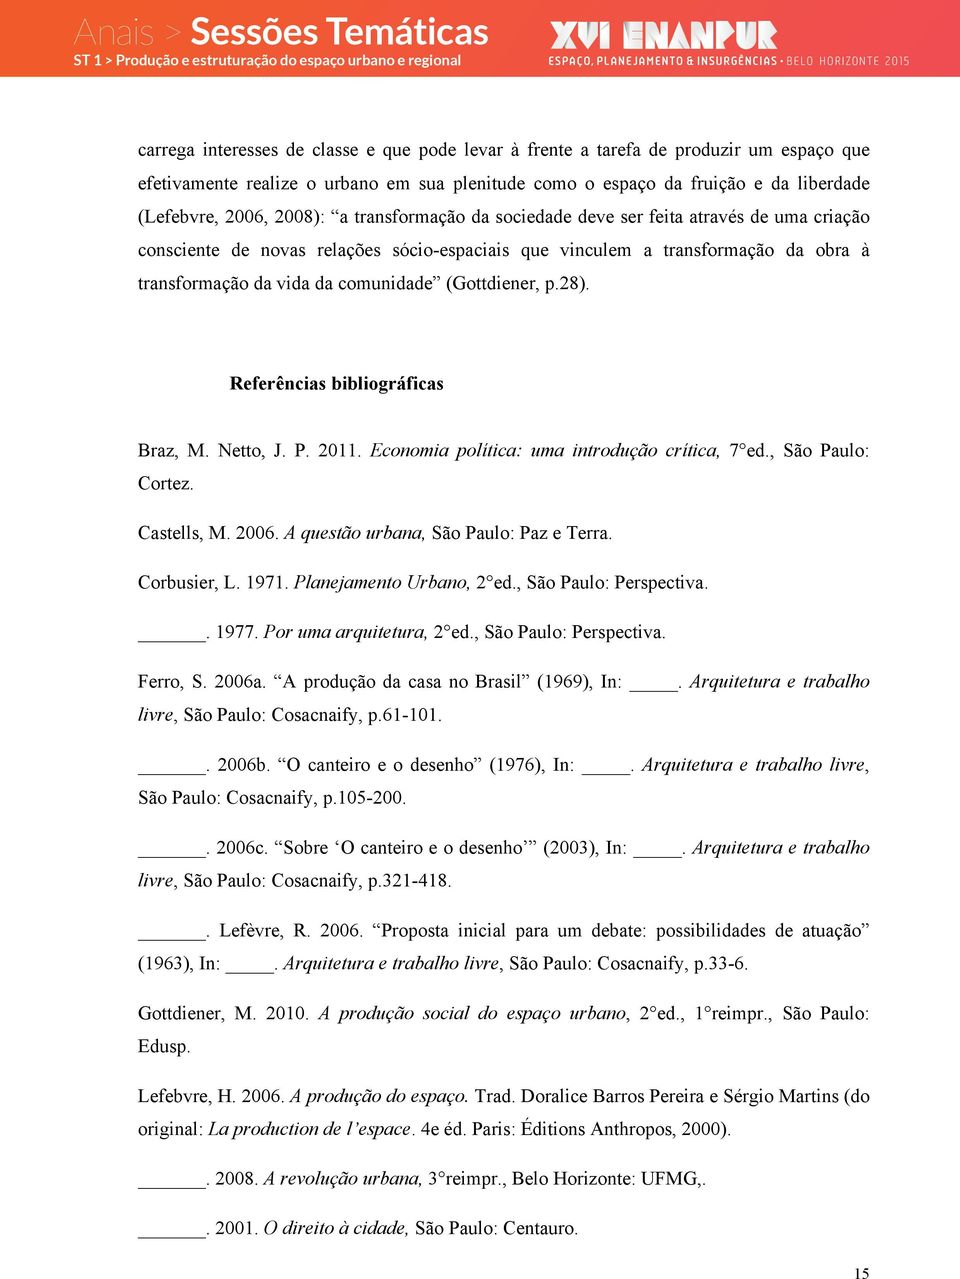 (Gottdiener, p.28). Referências bibliográficas Braz, M. Netto, J. P. 2011. Economia política: uma introdução crítica, 7 ed., São Paulo: Cortez. Castells, M. 2006.